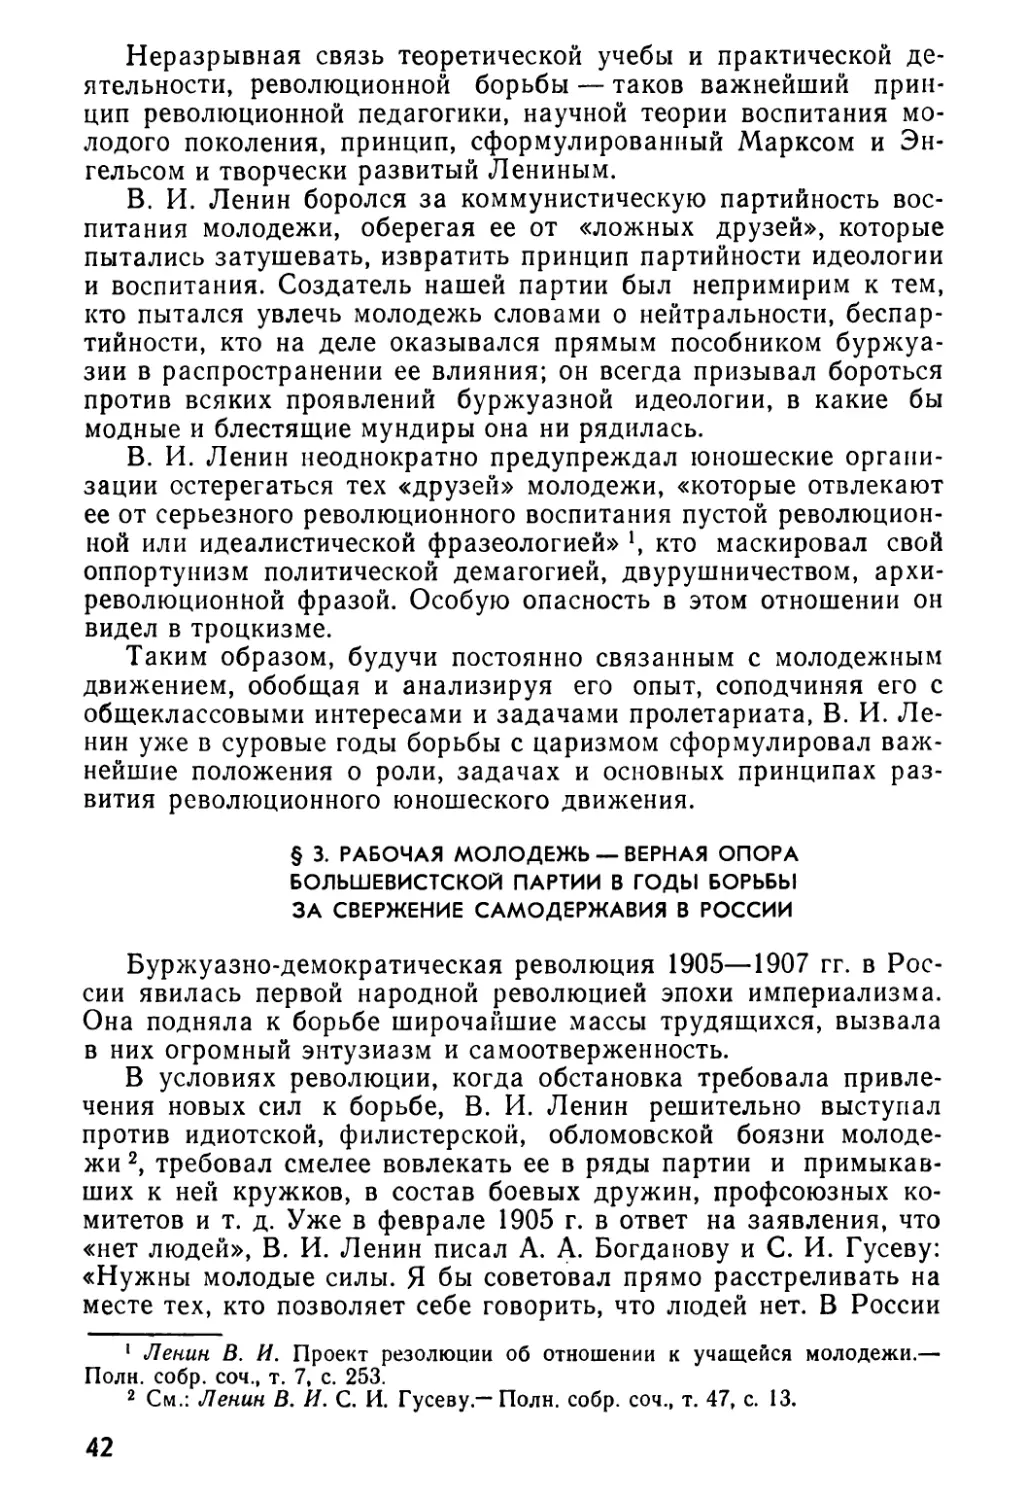 § 3. Рабочая молодежь — верная опора большевистской партии в годы борьбы за свержение самодержавия в России